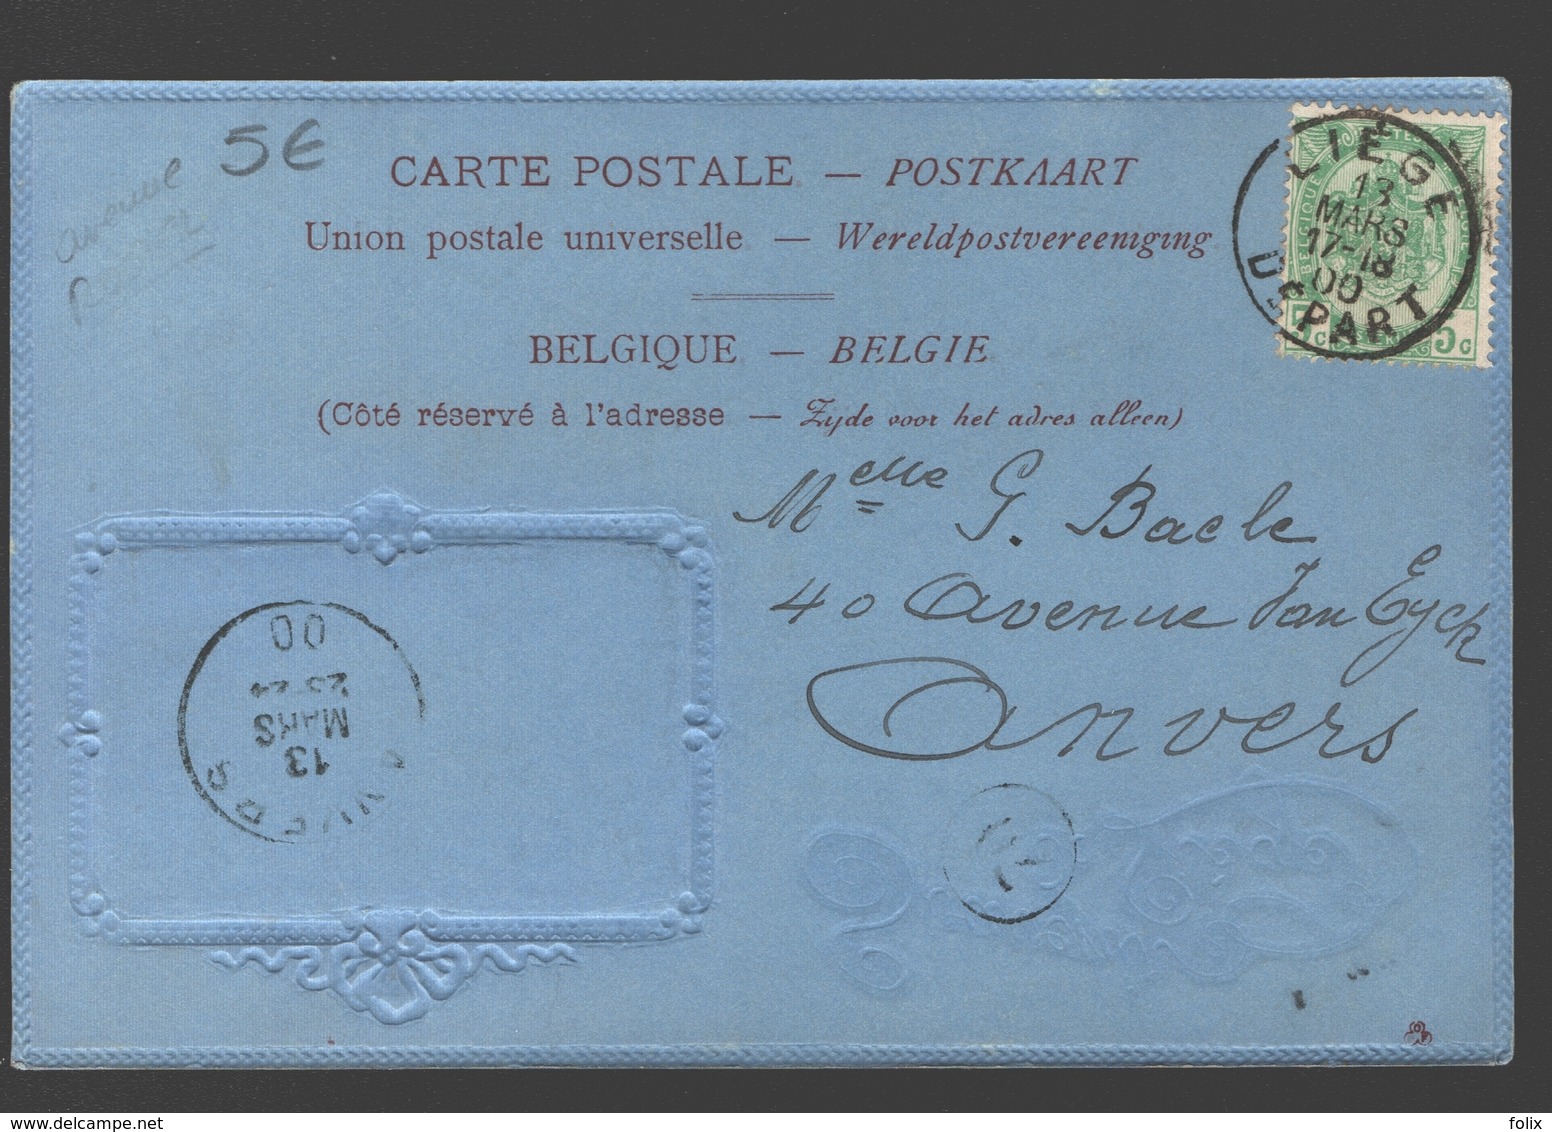 Liège - Souvenir De Liège - 1900 - Carton Bleu / Blauw Karton - Reliëf - éd. Maréchal-Ory, Liège - Liège